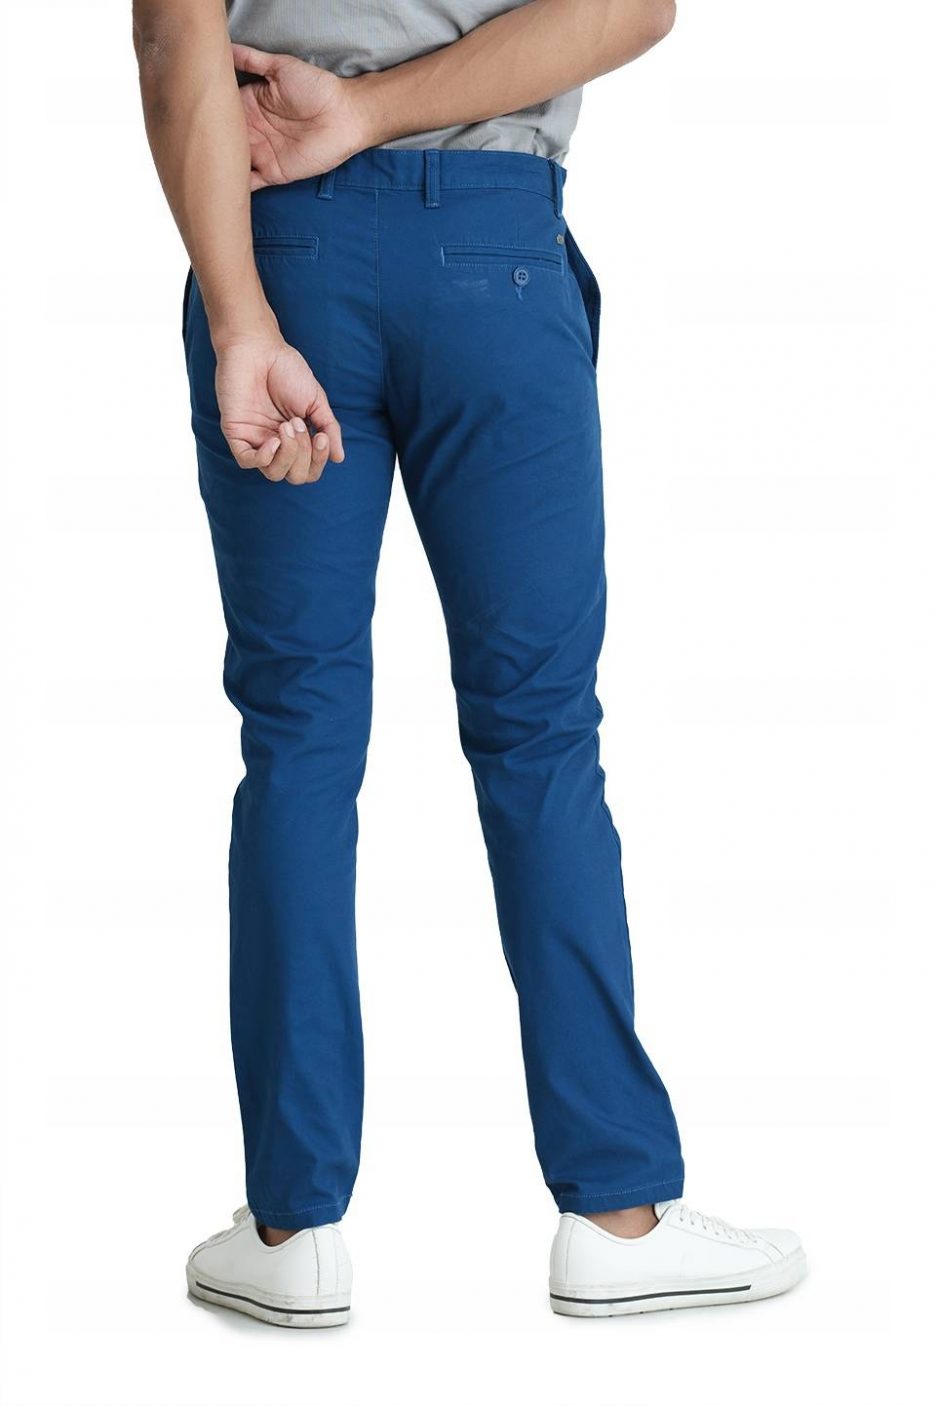 Blue Chino & Khaki Pants for Men | Nordstrom Rack